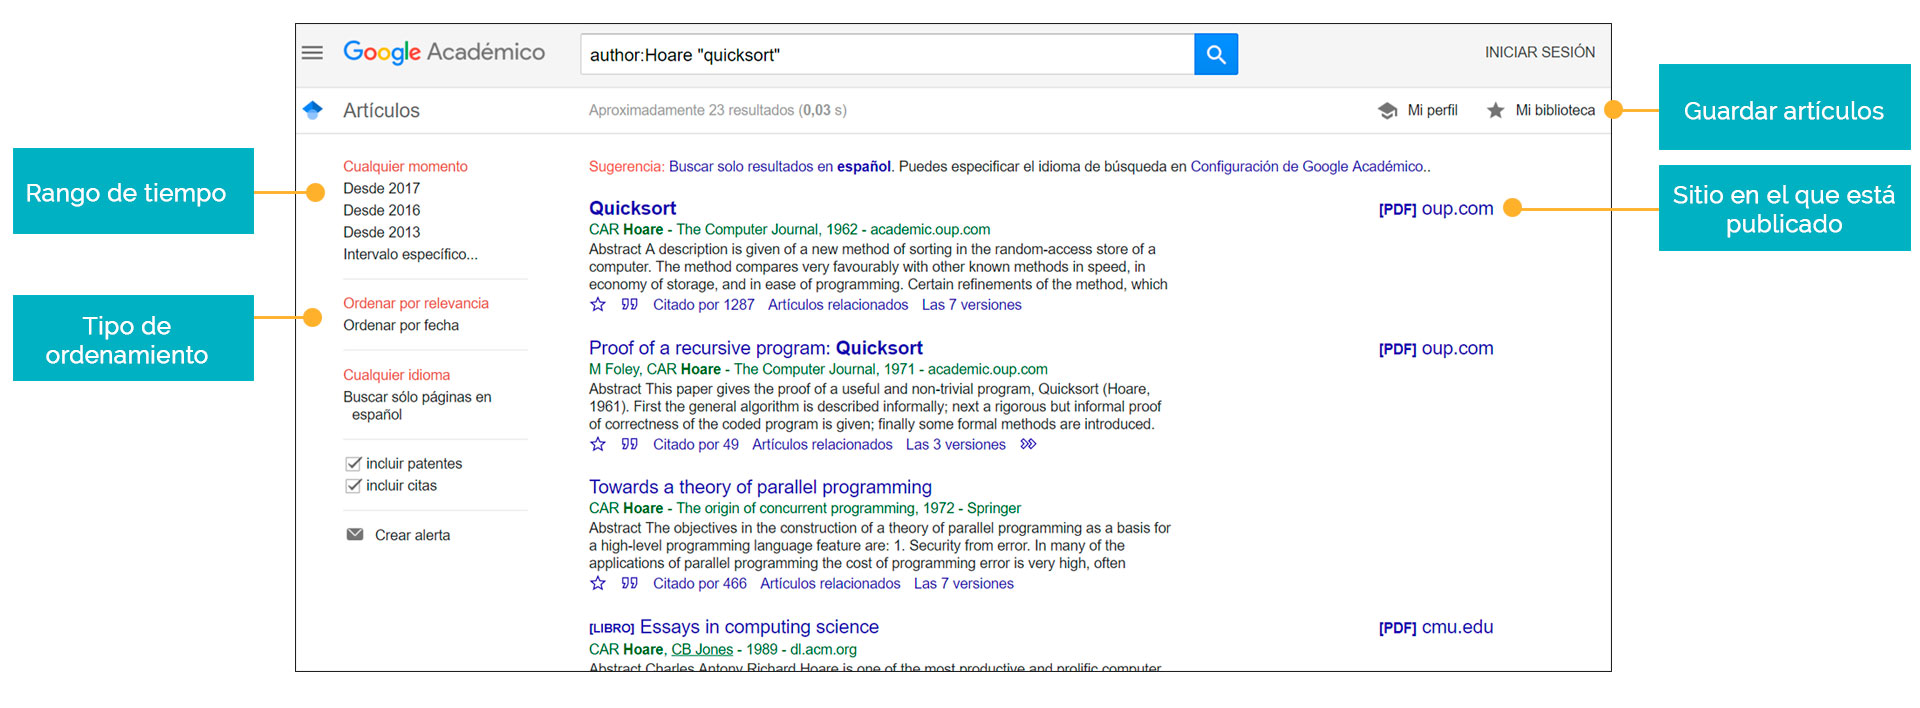 Pantalla de resultados al buscar información en Google Académico